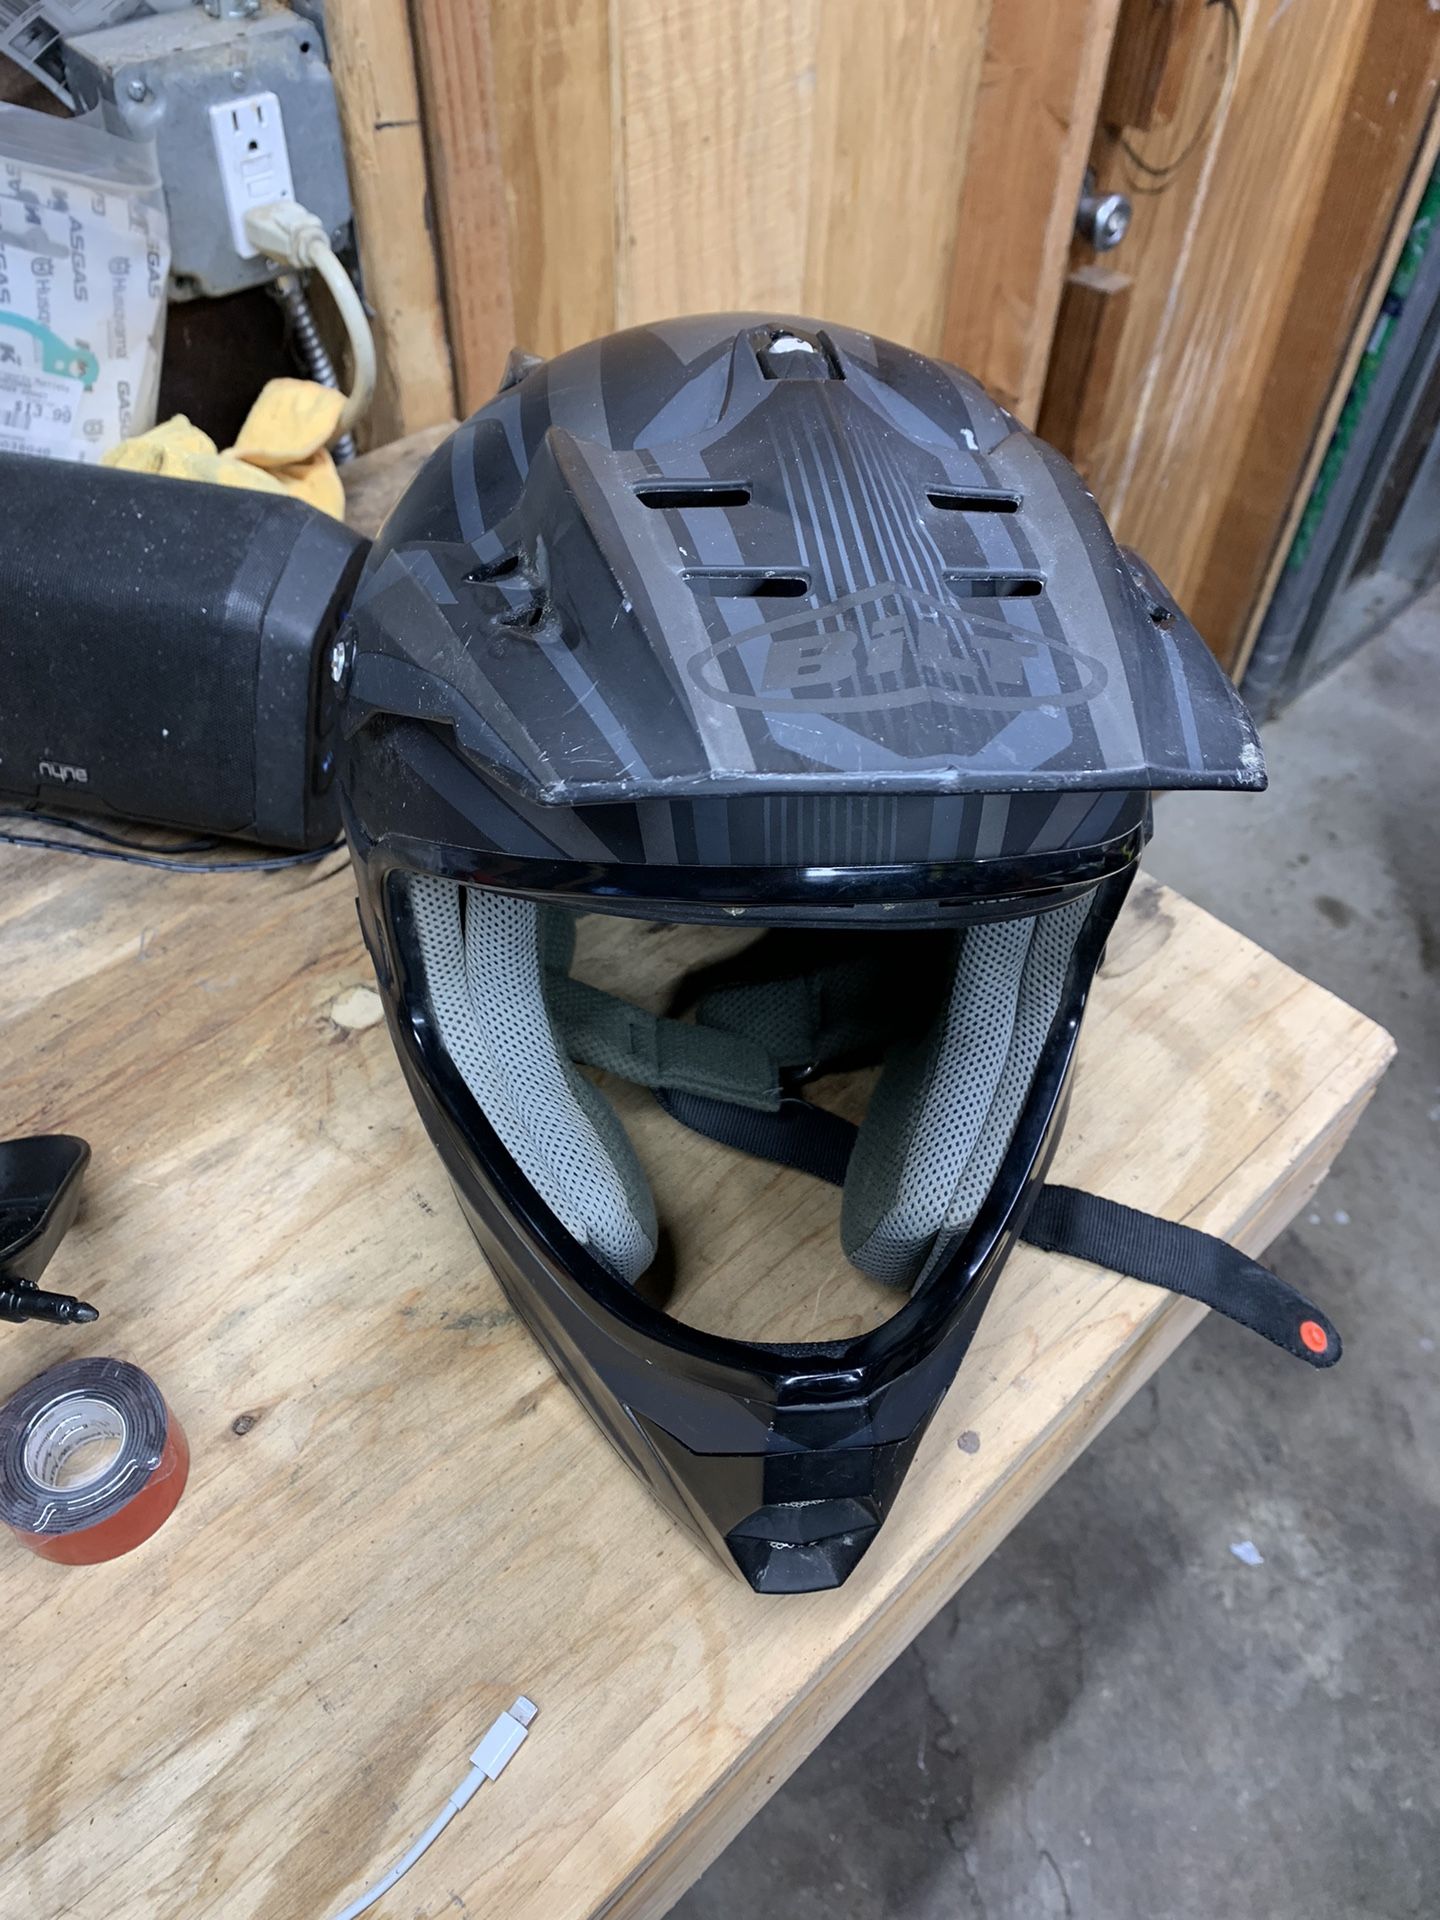 Large Motorcycle Helmet 